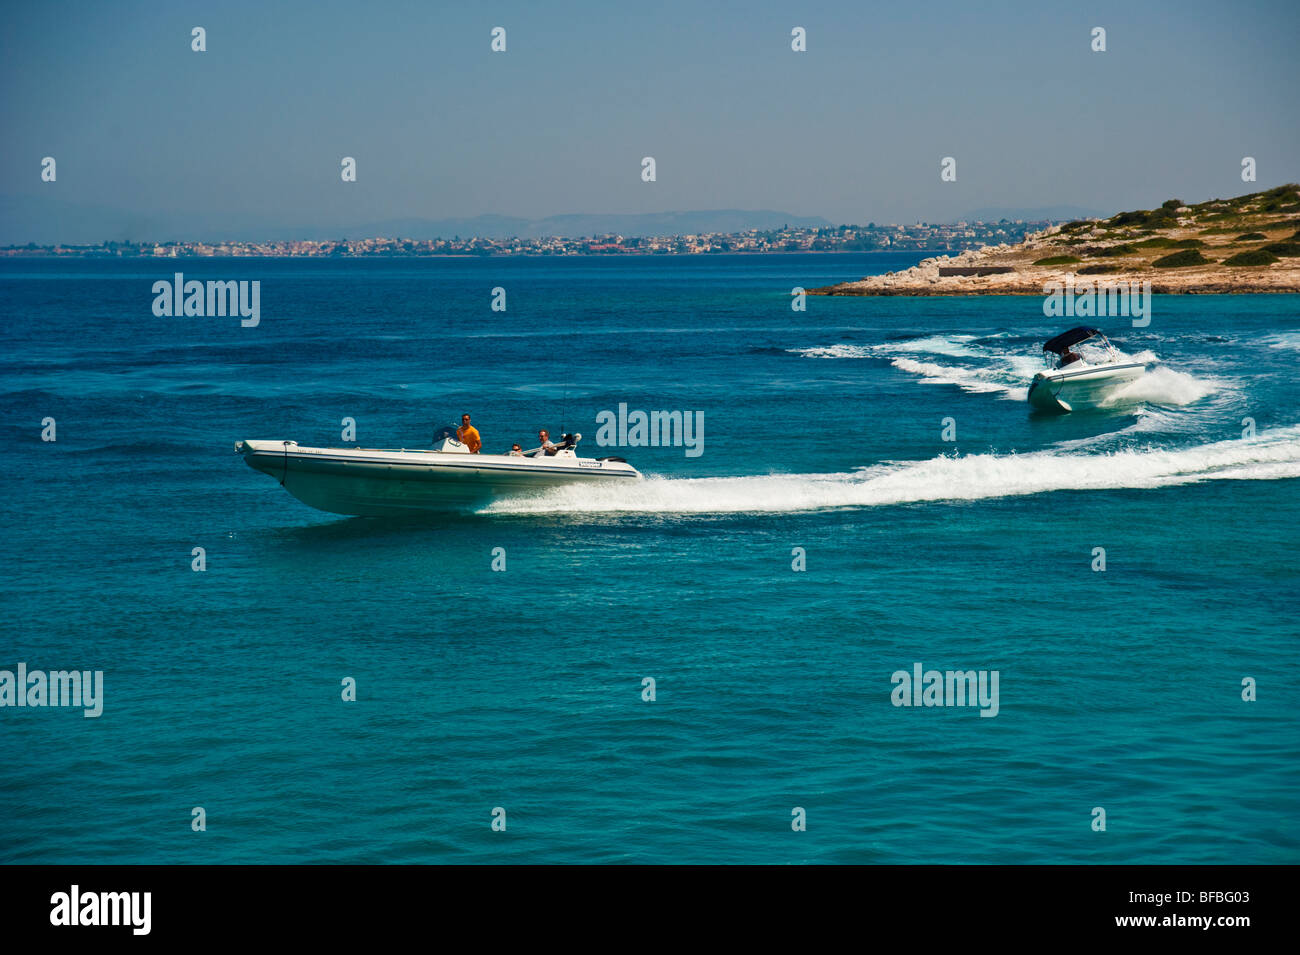 Les bateaux gonflables courbant en bleu de l'eau, Saroic Golf, Grèce Banque D'Images